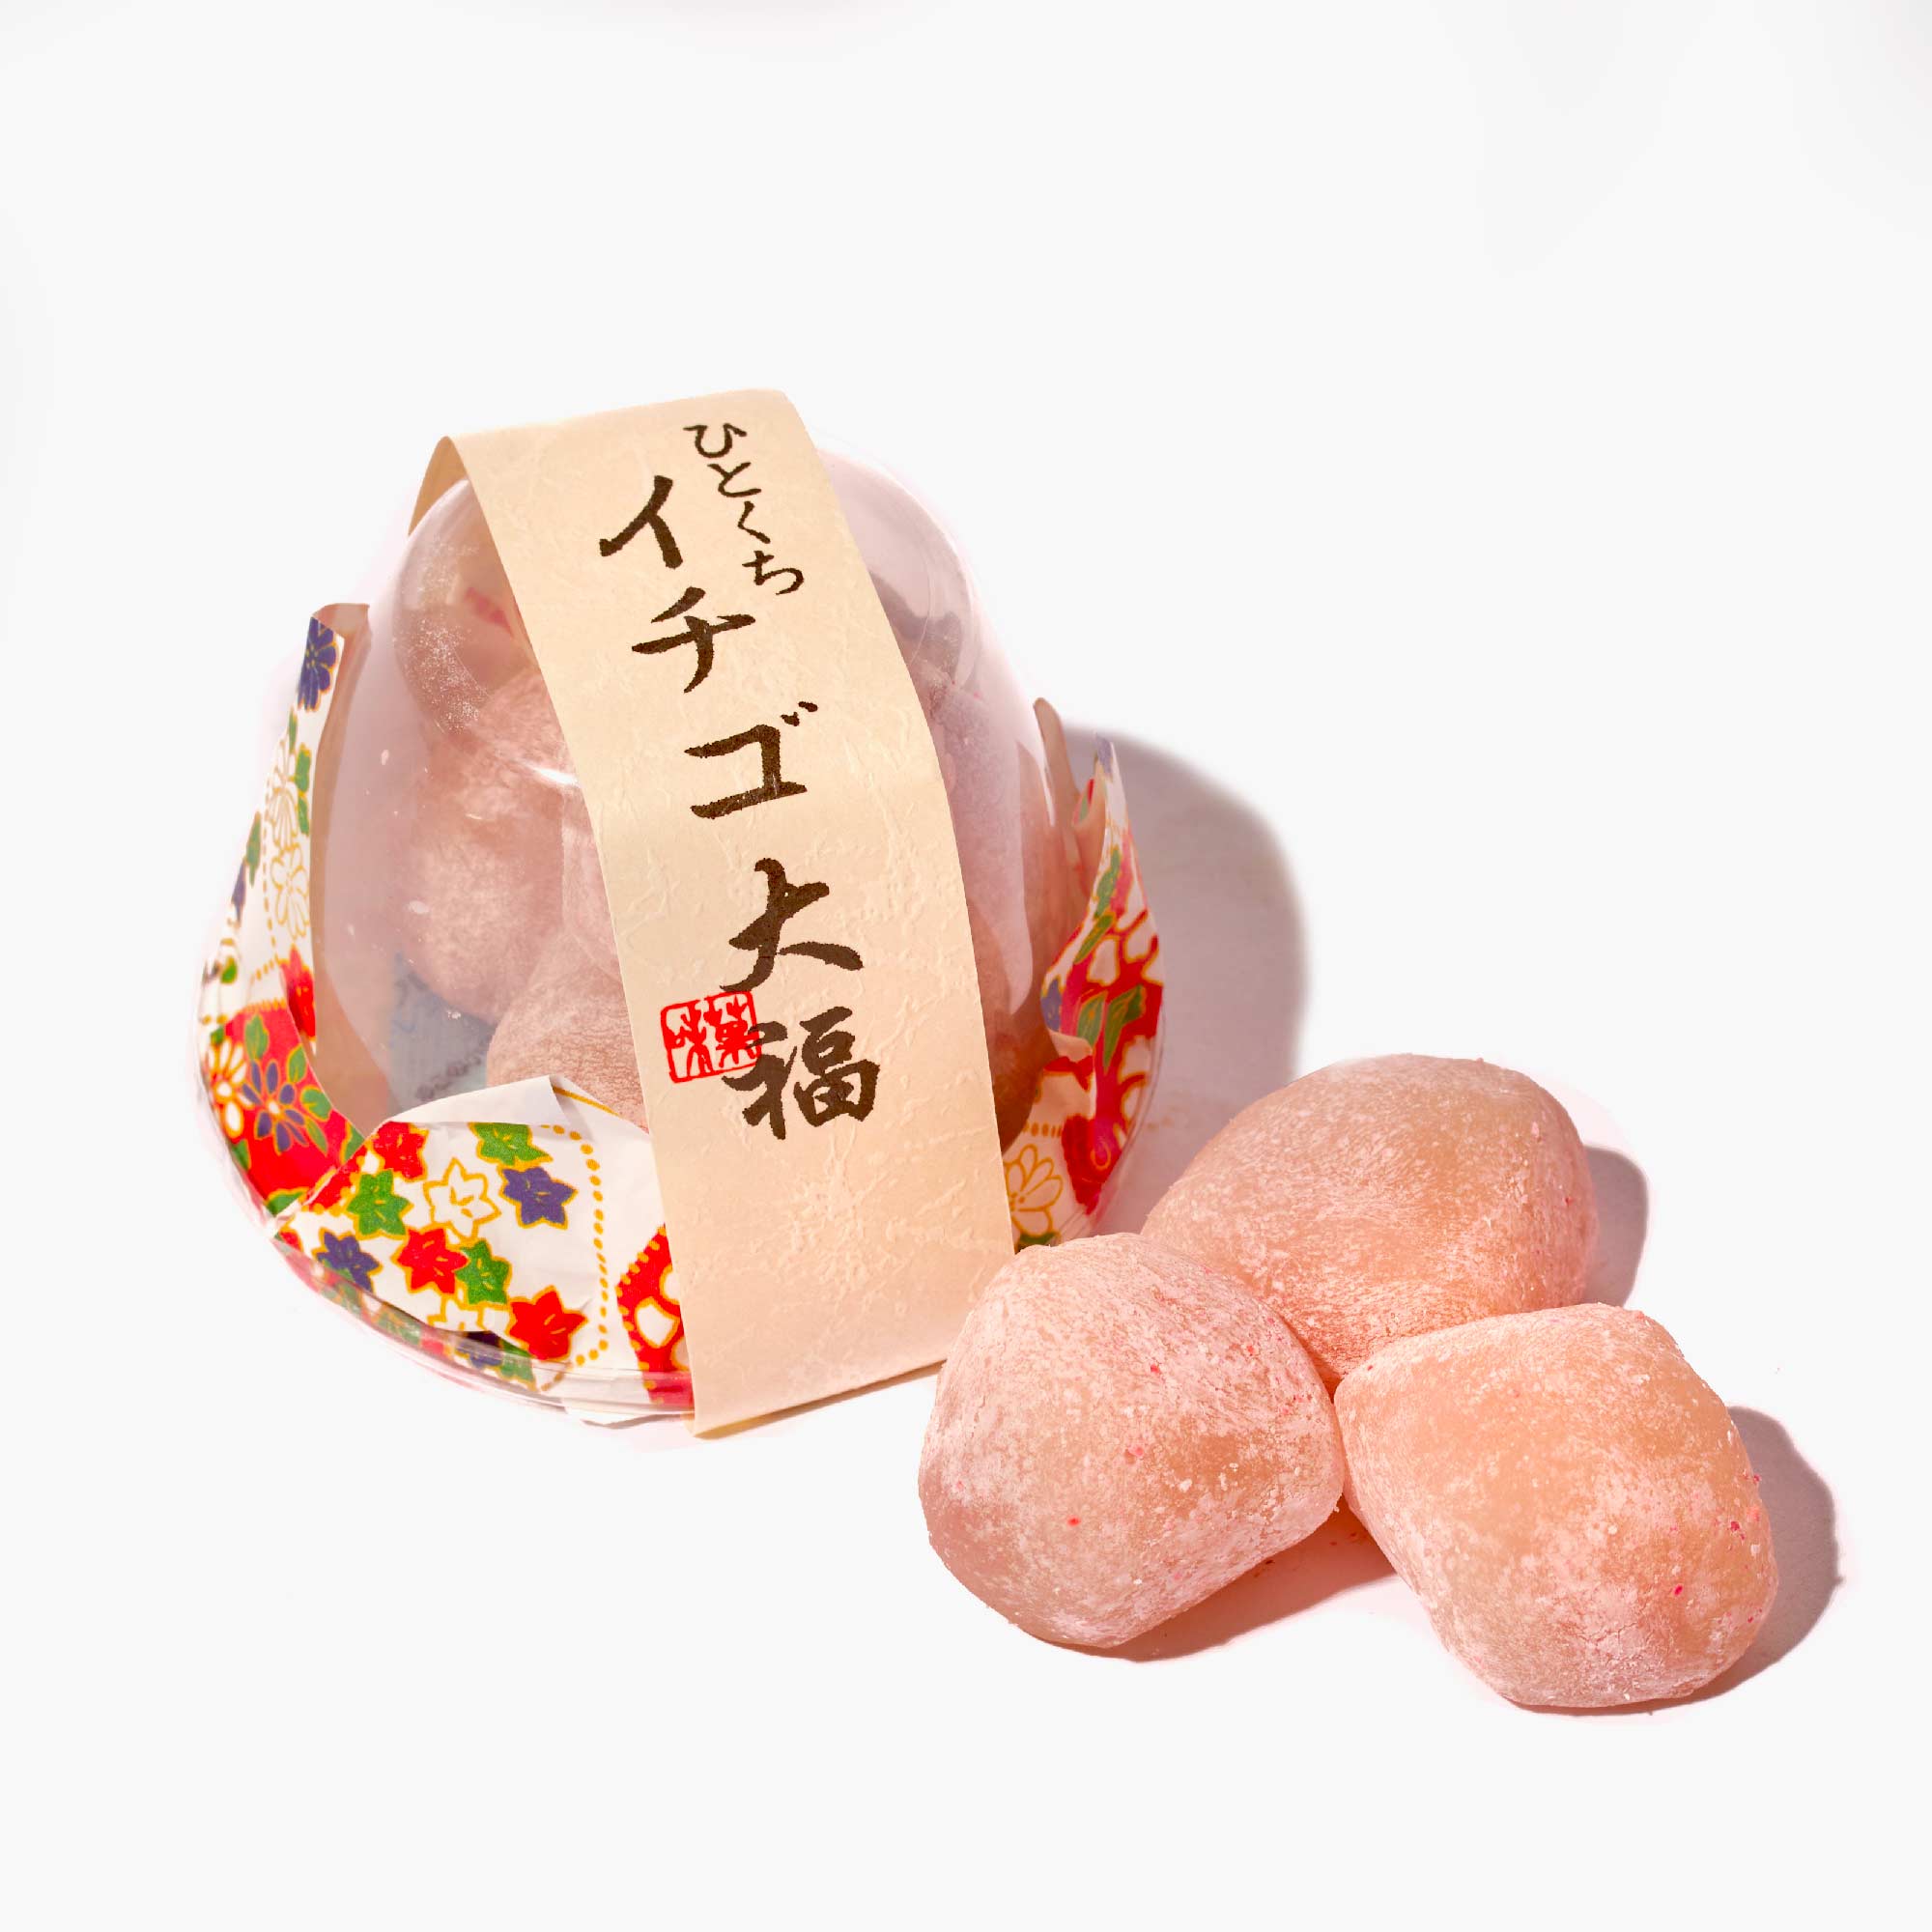 Strawberry Daifuku Mochi (1 Pack) – Bokksu